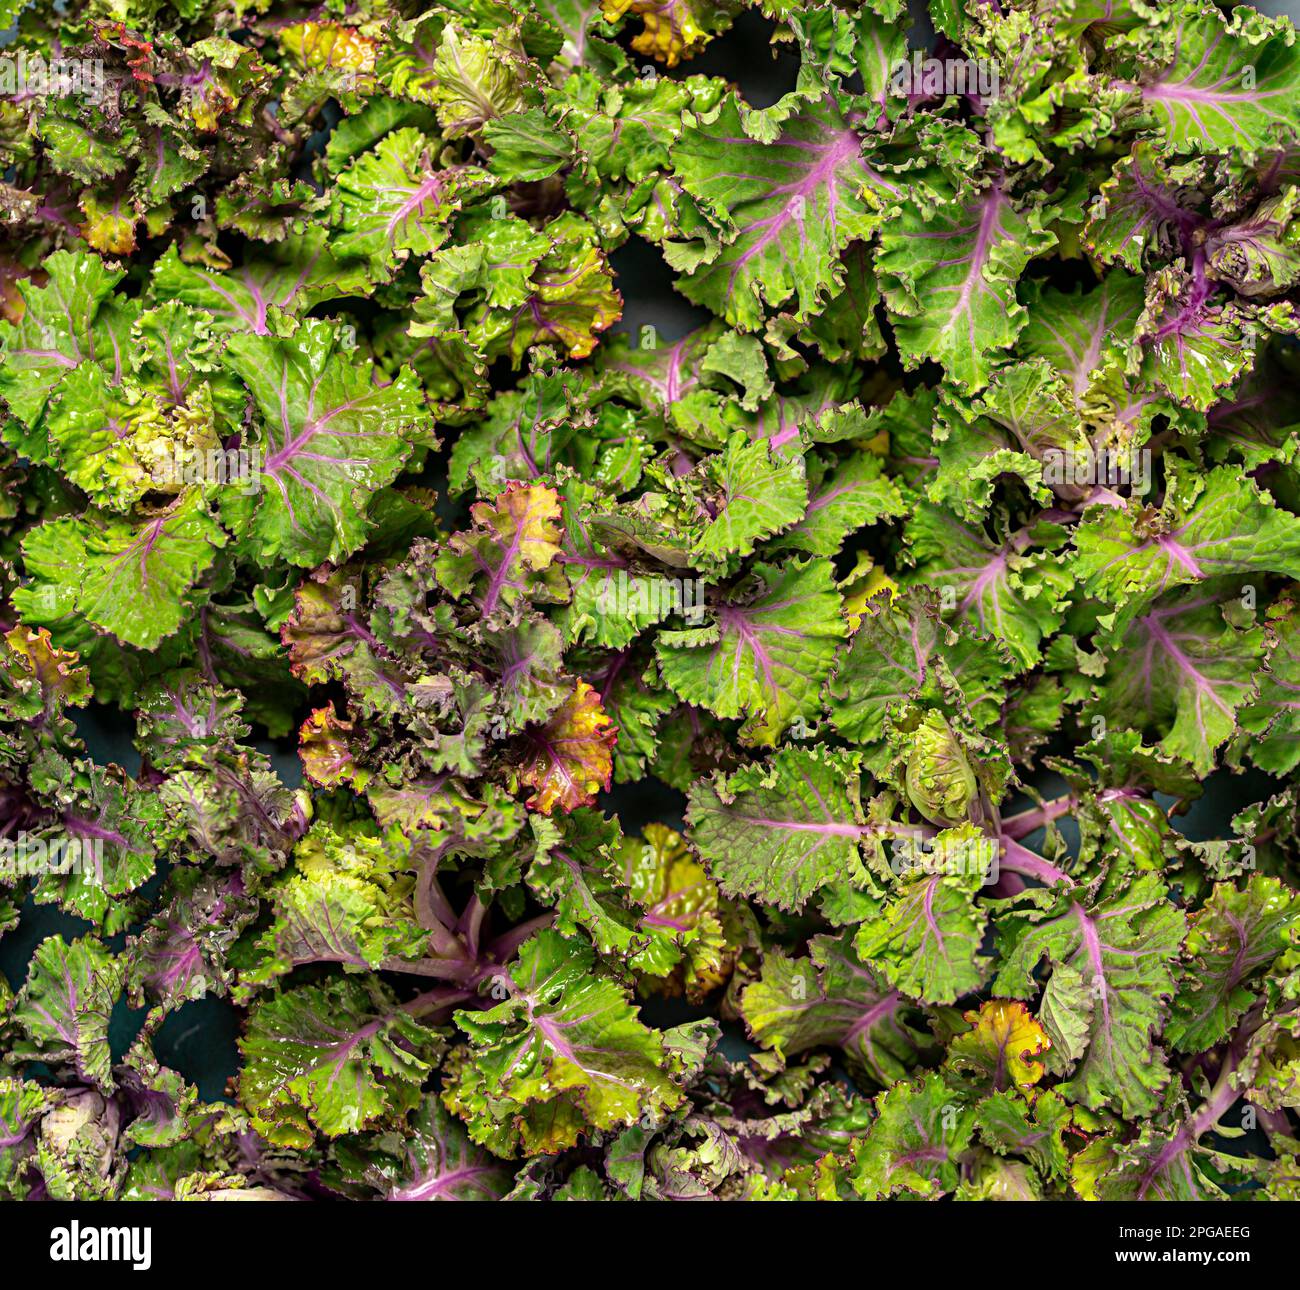 Photographie de fond de kalette fraîche, kale, plante hybride, légume Banque D'Images